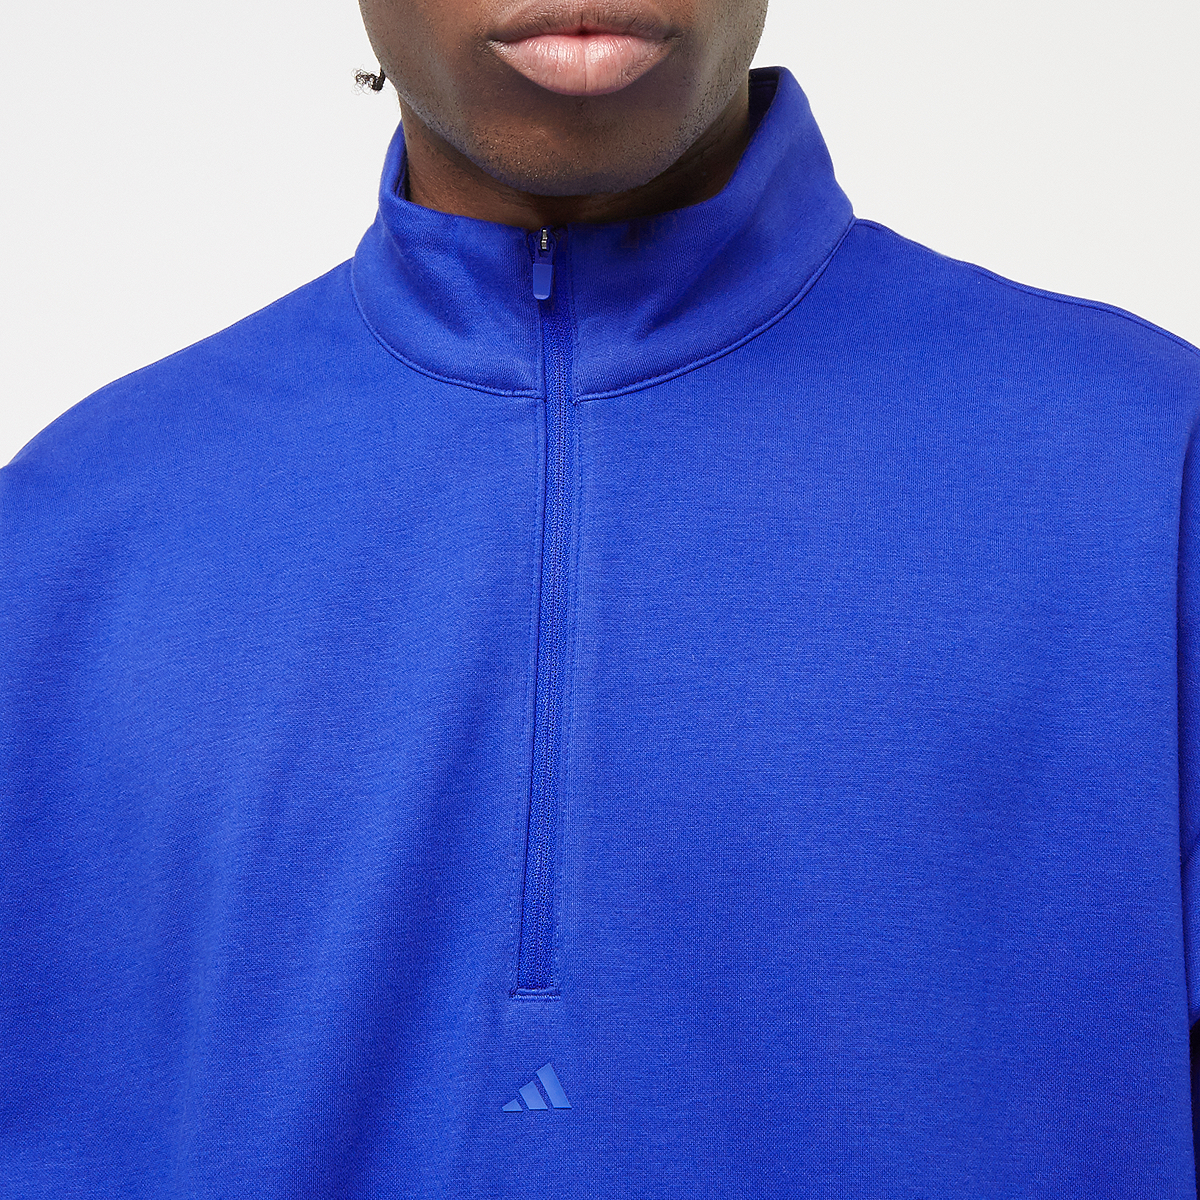 adidas Originals Basketball Fleece Half Zip Hooded vesten Kleding lucid blue maat: S beschikbare maaten:S M L